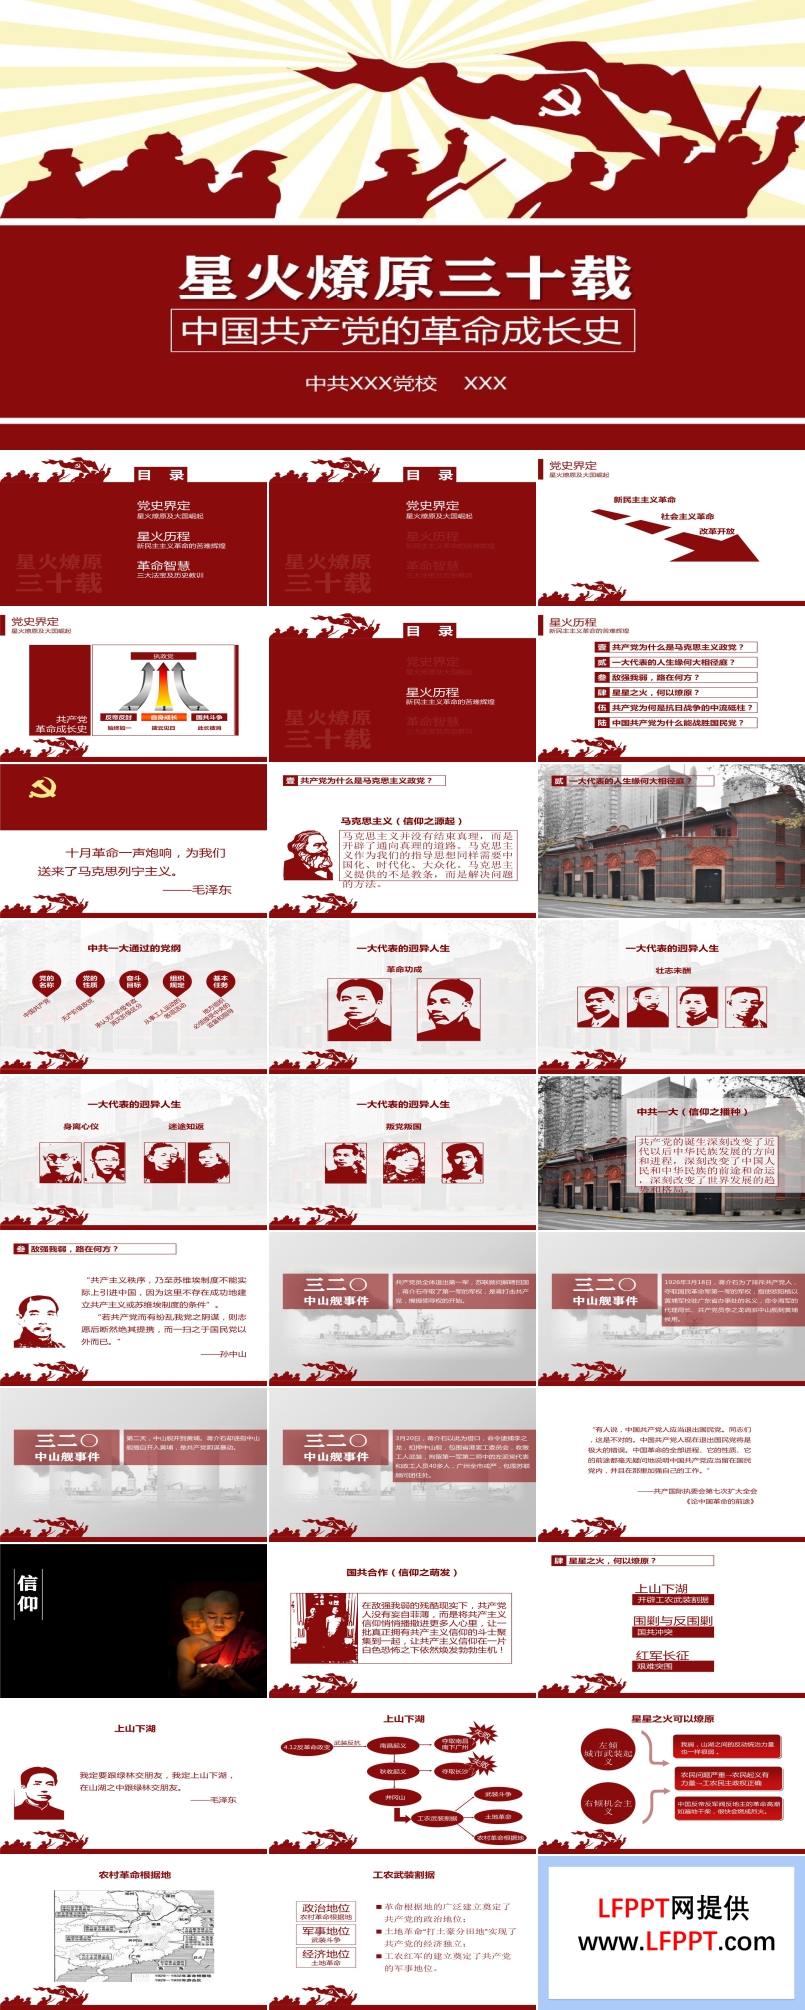 文化大革命风传统革命风格红白剪纸风格PPT模板